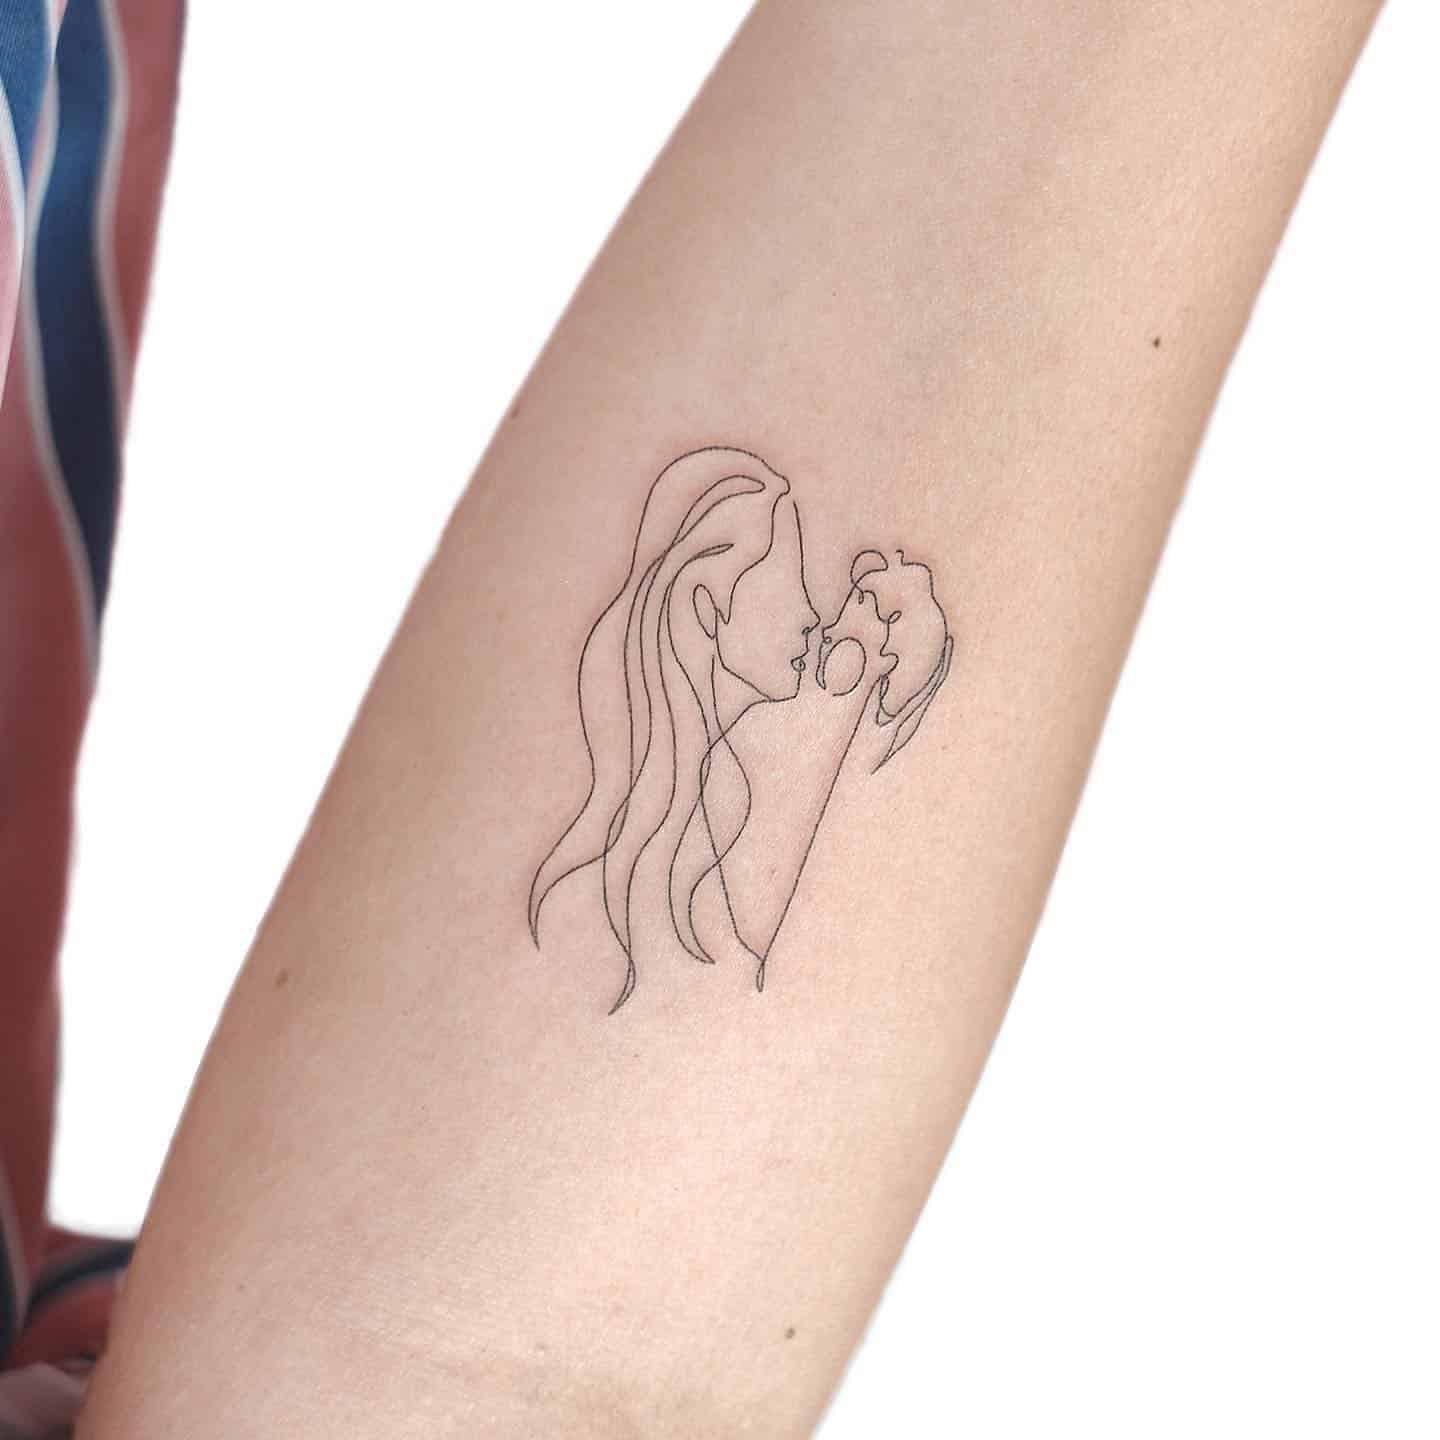 Fineline tattoo on forearm by gigi tattooer